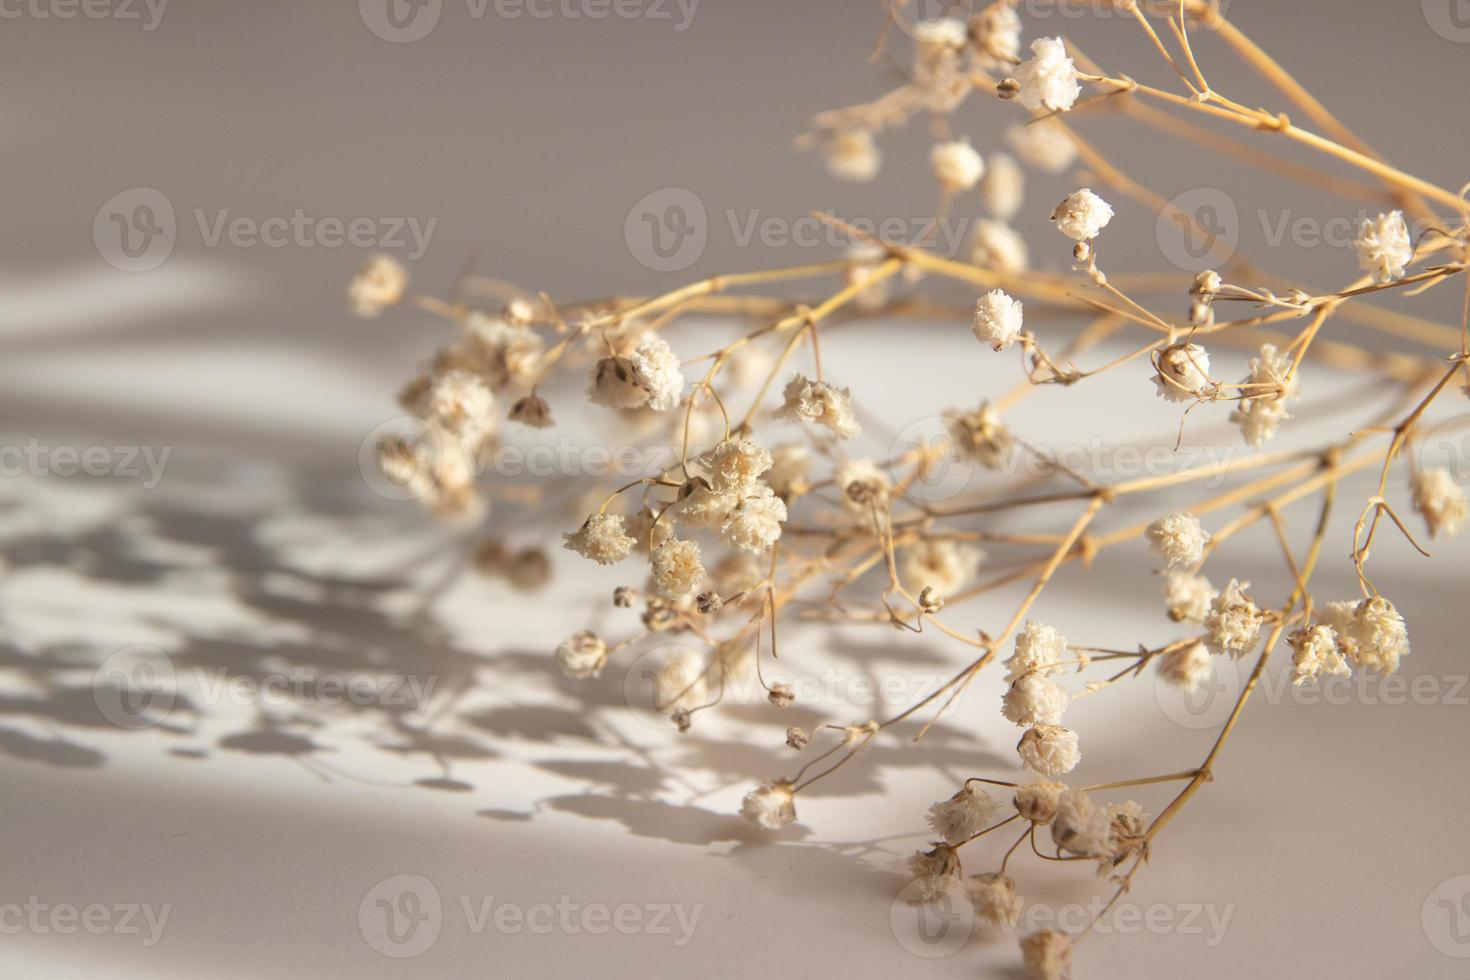 abstracte florale achtergrond met droge kleine gipskruid bloemen met schaduw op een beige achtergrond. variabele focus foto